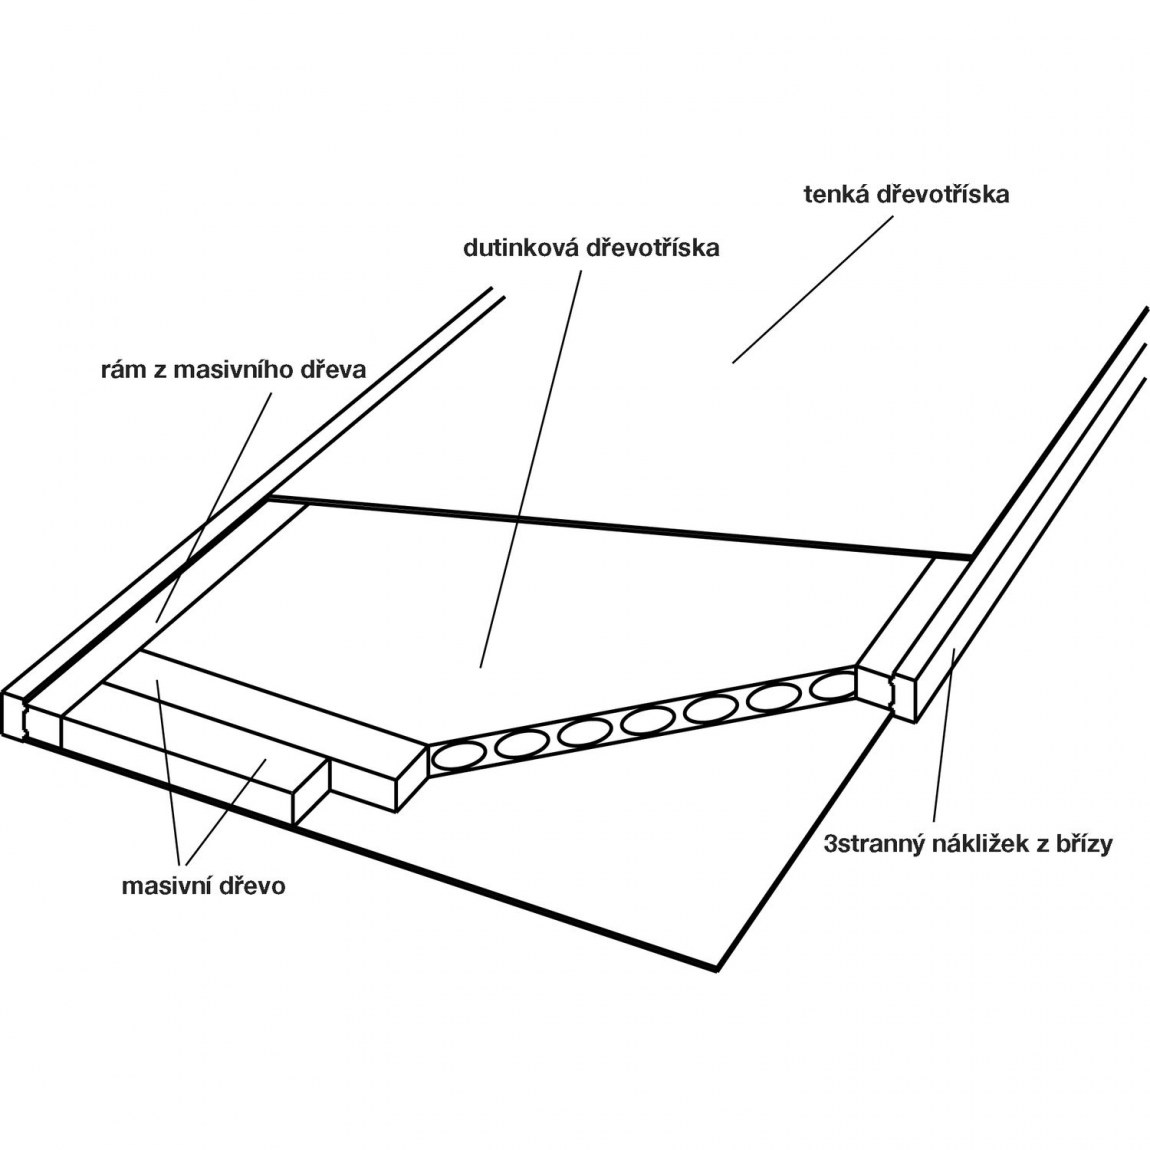 Dveřní polotovar Optimal RS, nákližek bříza - šířka 800 mm výška 2030 mm - Dílna - Outdoor Stavební potřeby